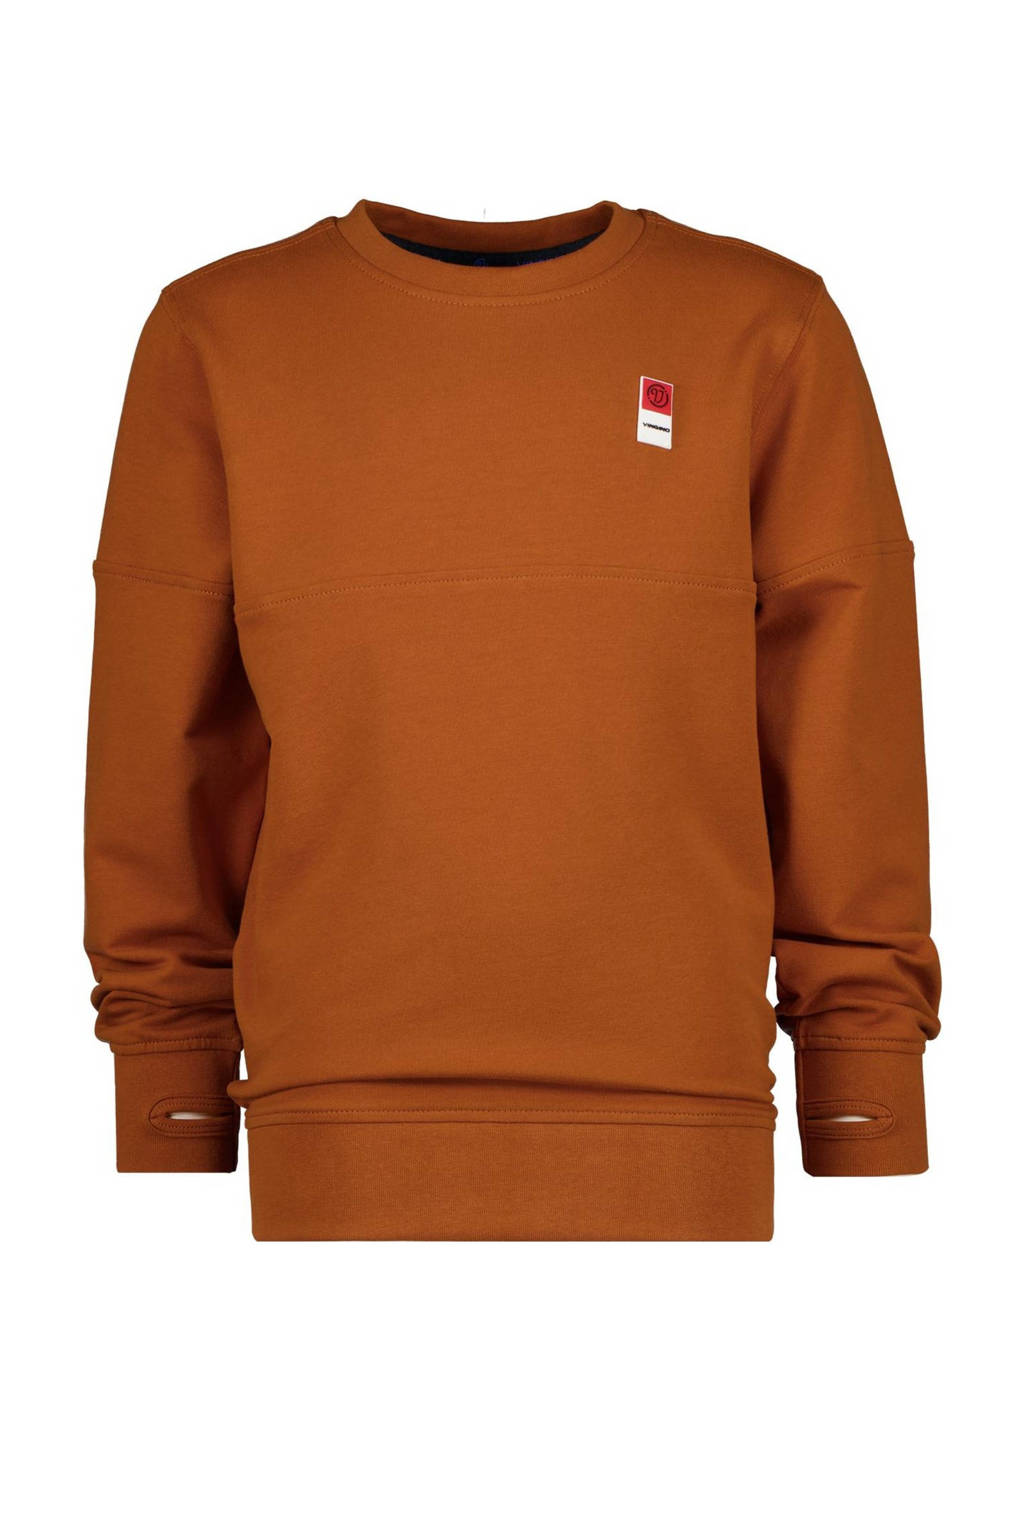 Clam onderwerp schuur Vingino Essentials sweater bruin | wehkamp